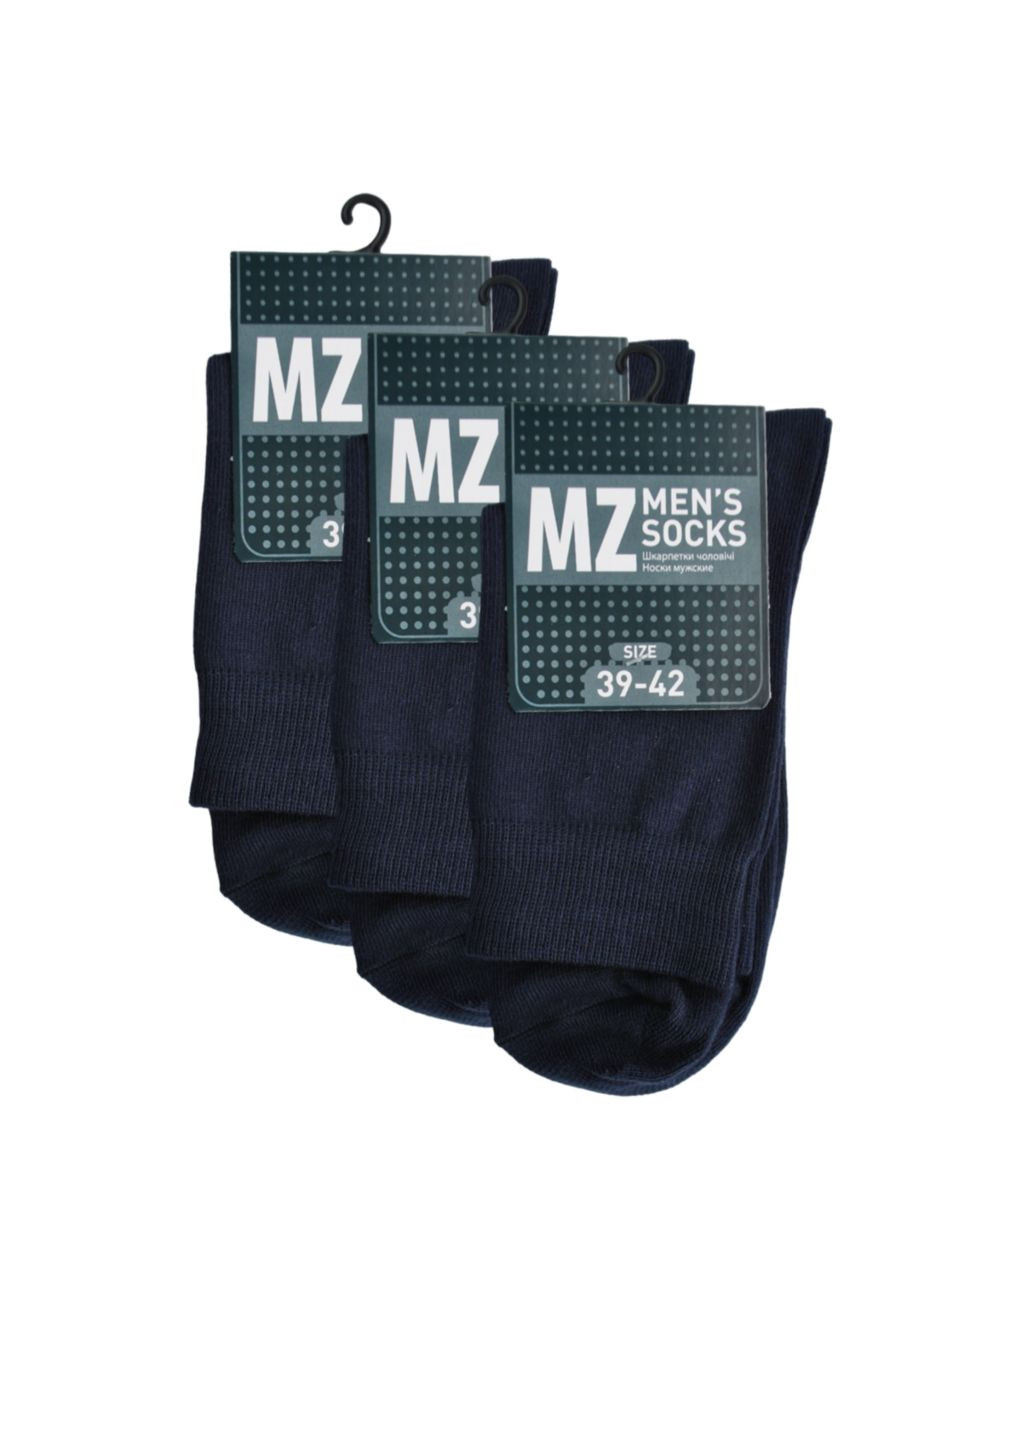 RFT Шкарпетки чол. демі клас. вис./RT1311-001/39-42/темно-синій. Набір (3 шт.) MZ rt1311-001_набори (260063196)